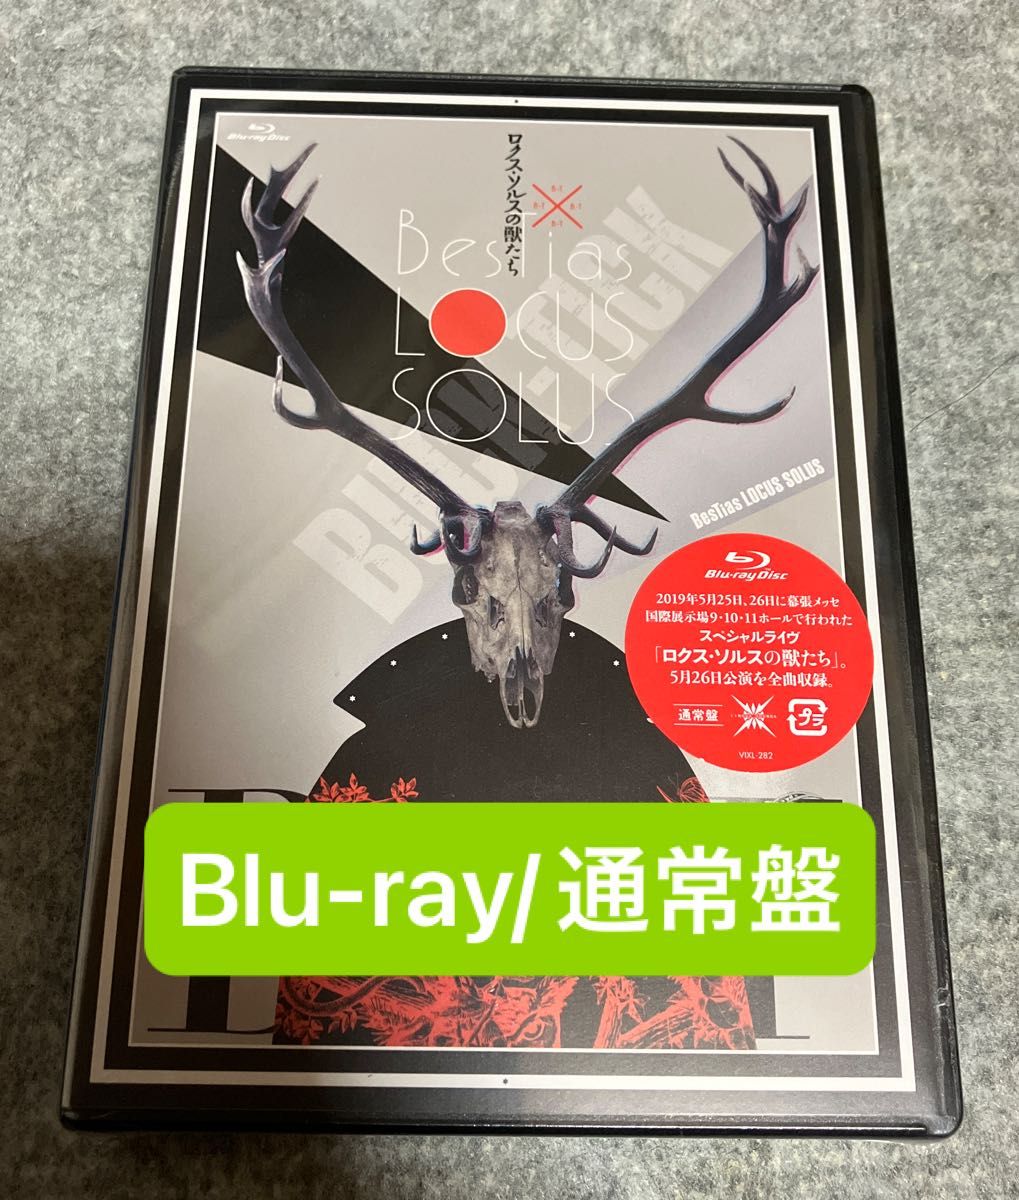 BUCK-TICK ロクスソルスの獣たち Blu-ray 通常盤